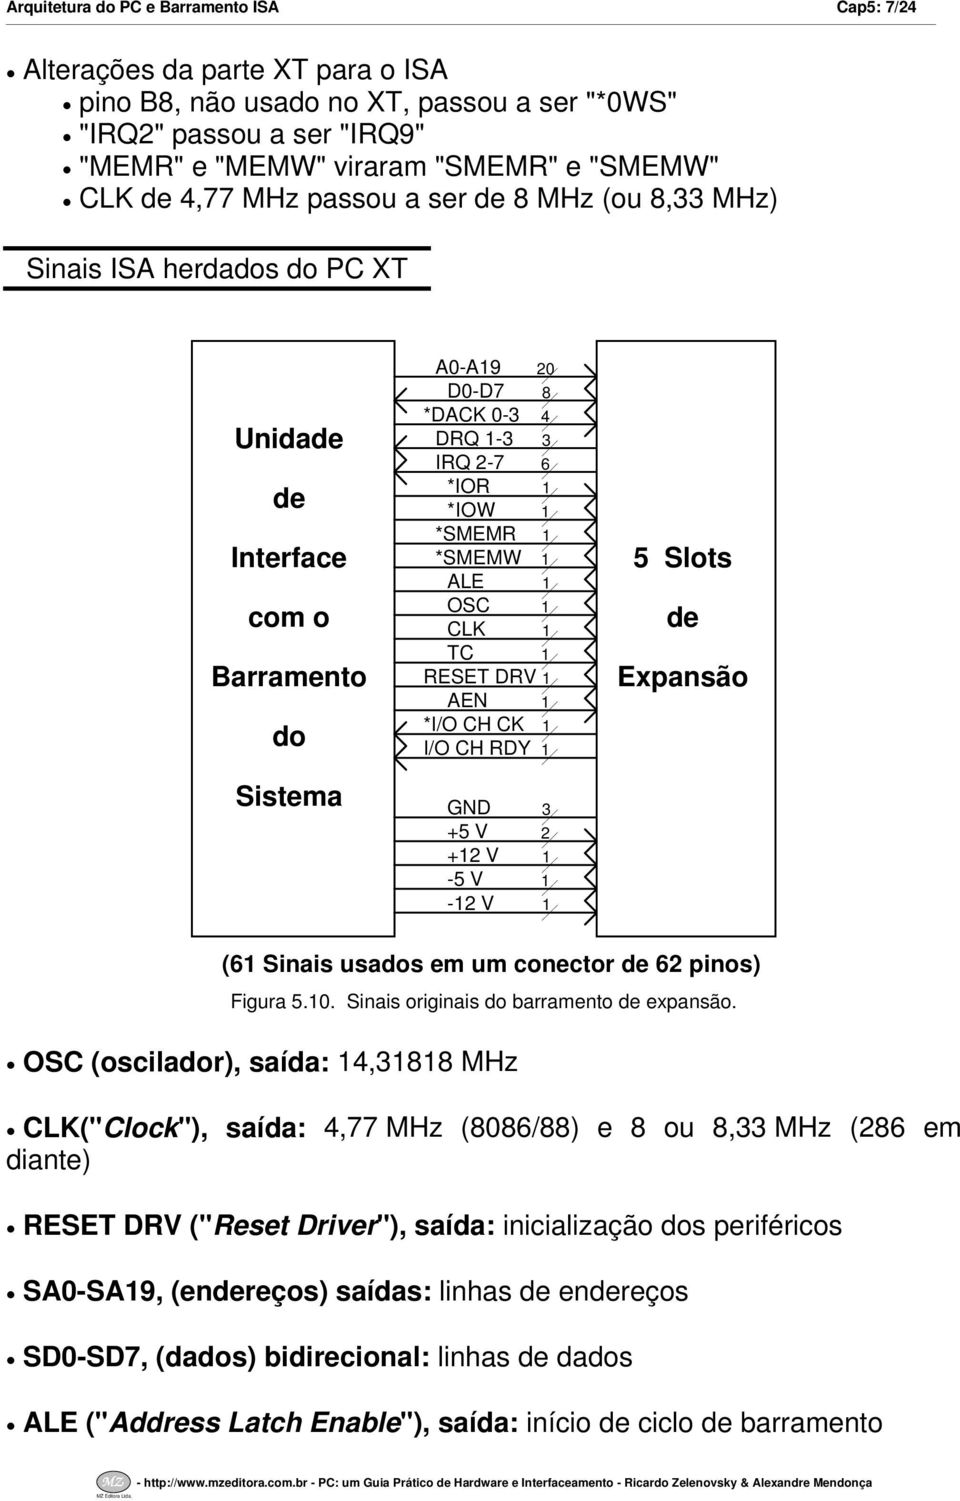 ALE OSC CLK TC RESET DRV AEN *IO CH CK IO CH RDY GND 3 +5 V 2 +2 V -5 V -2 V 5 Slots de Expansão (6 Sinais usados em um conector de 62 pinos) Figura 5.0. Sinais originais do barramento de expansão.